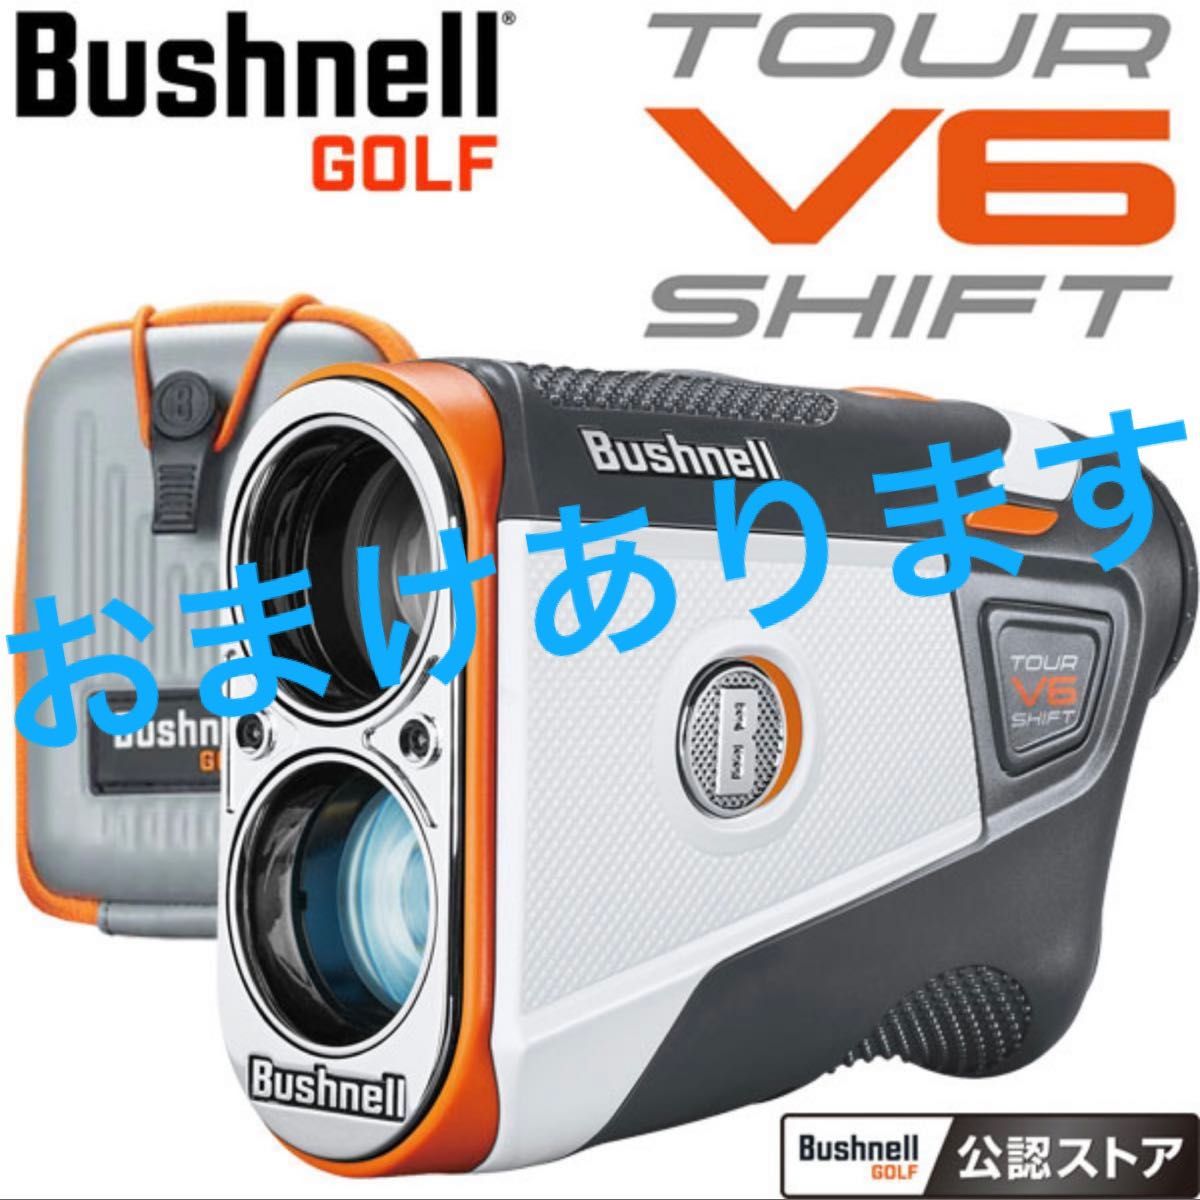 新品未使用 Bushnell ブッシュネル ゴルフ用レーザー距離計 ピン